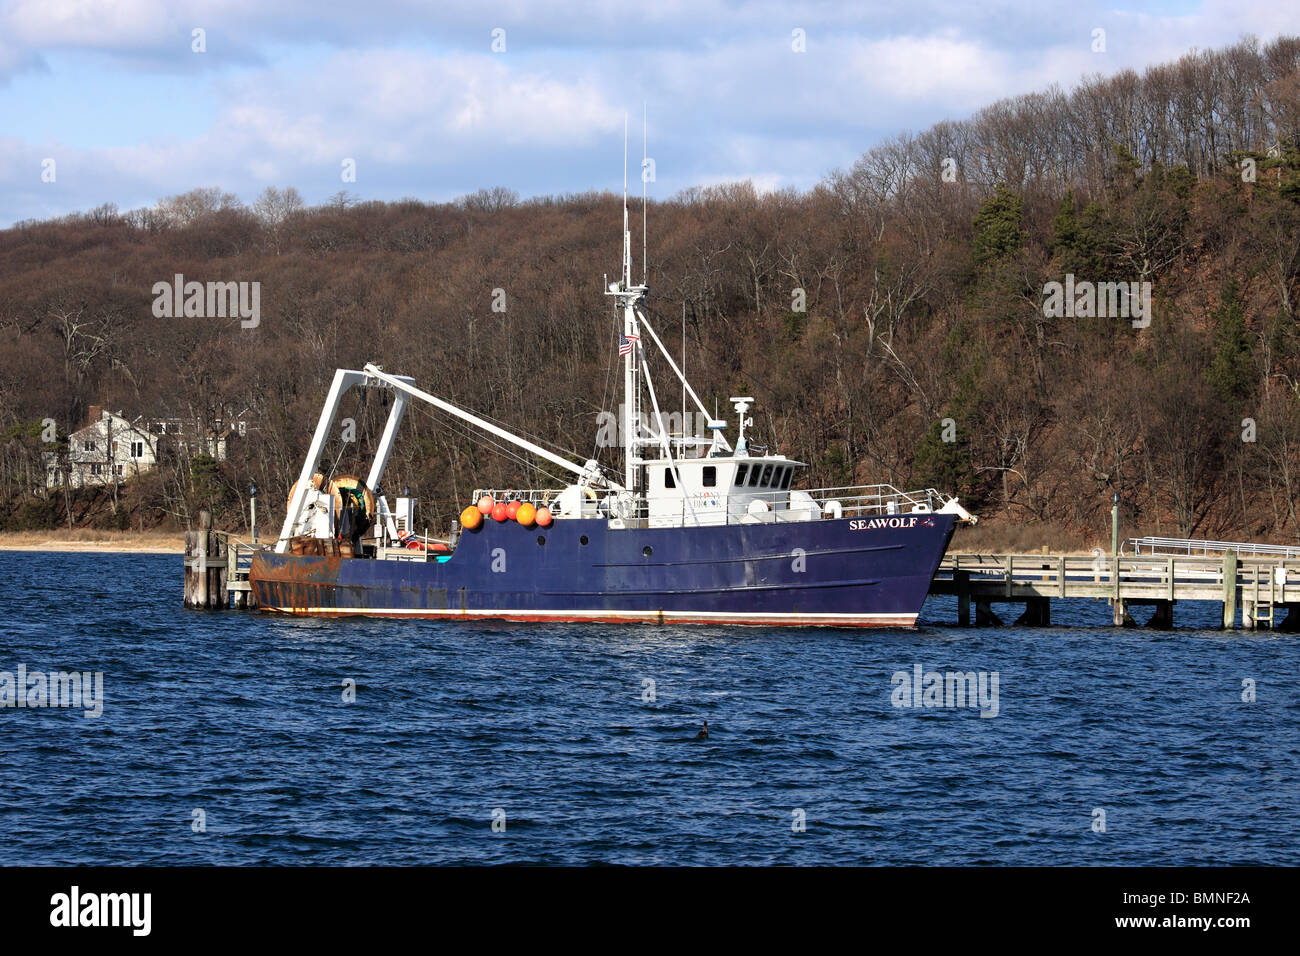 Le "eawolf" navire de recherche maritime utilisé par l'université Stony Brook Programme de biologie marine, Port Jefferson Long Island, NY Banque D'Images